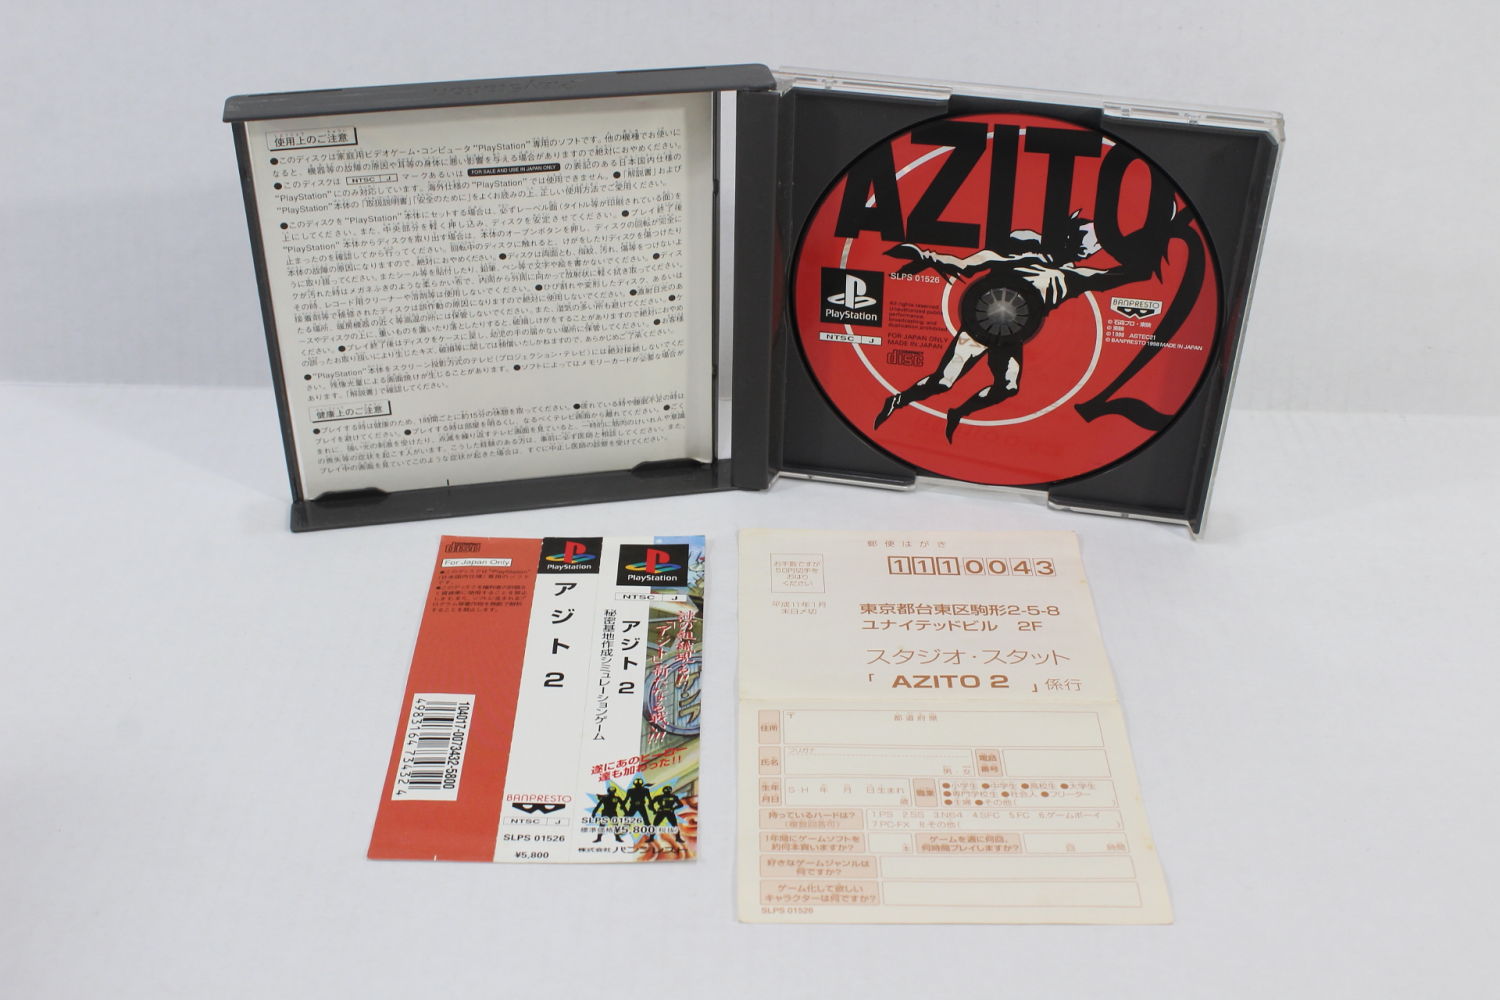 AZITO 2 No Manual (B) PS1 – Retro Games Japan